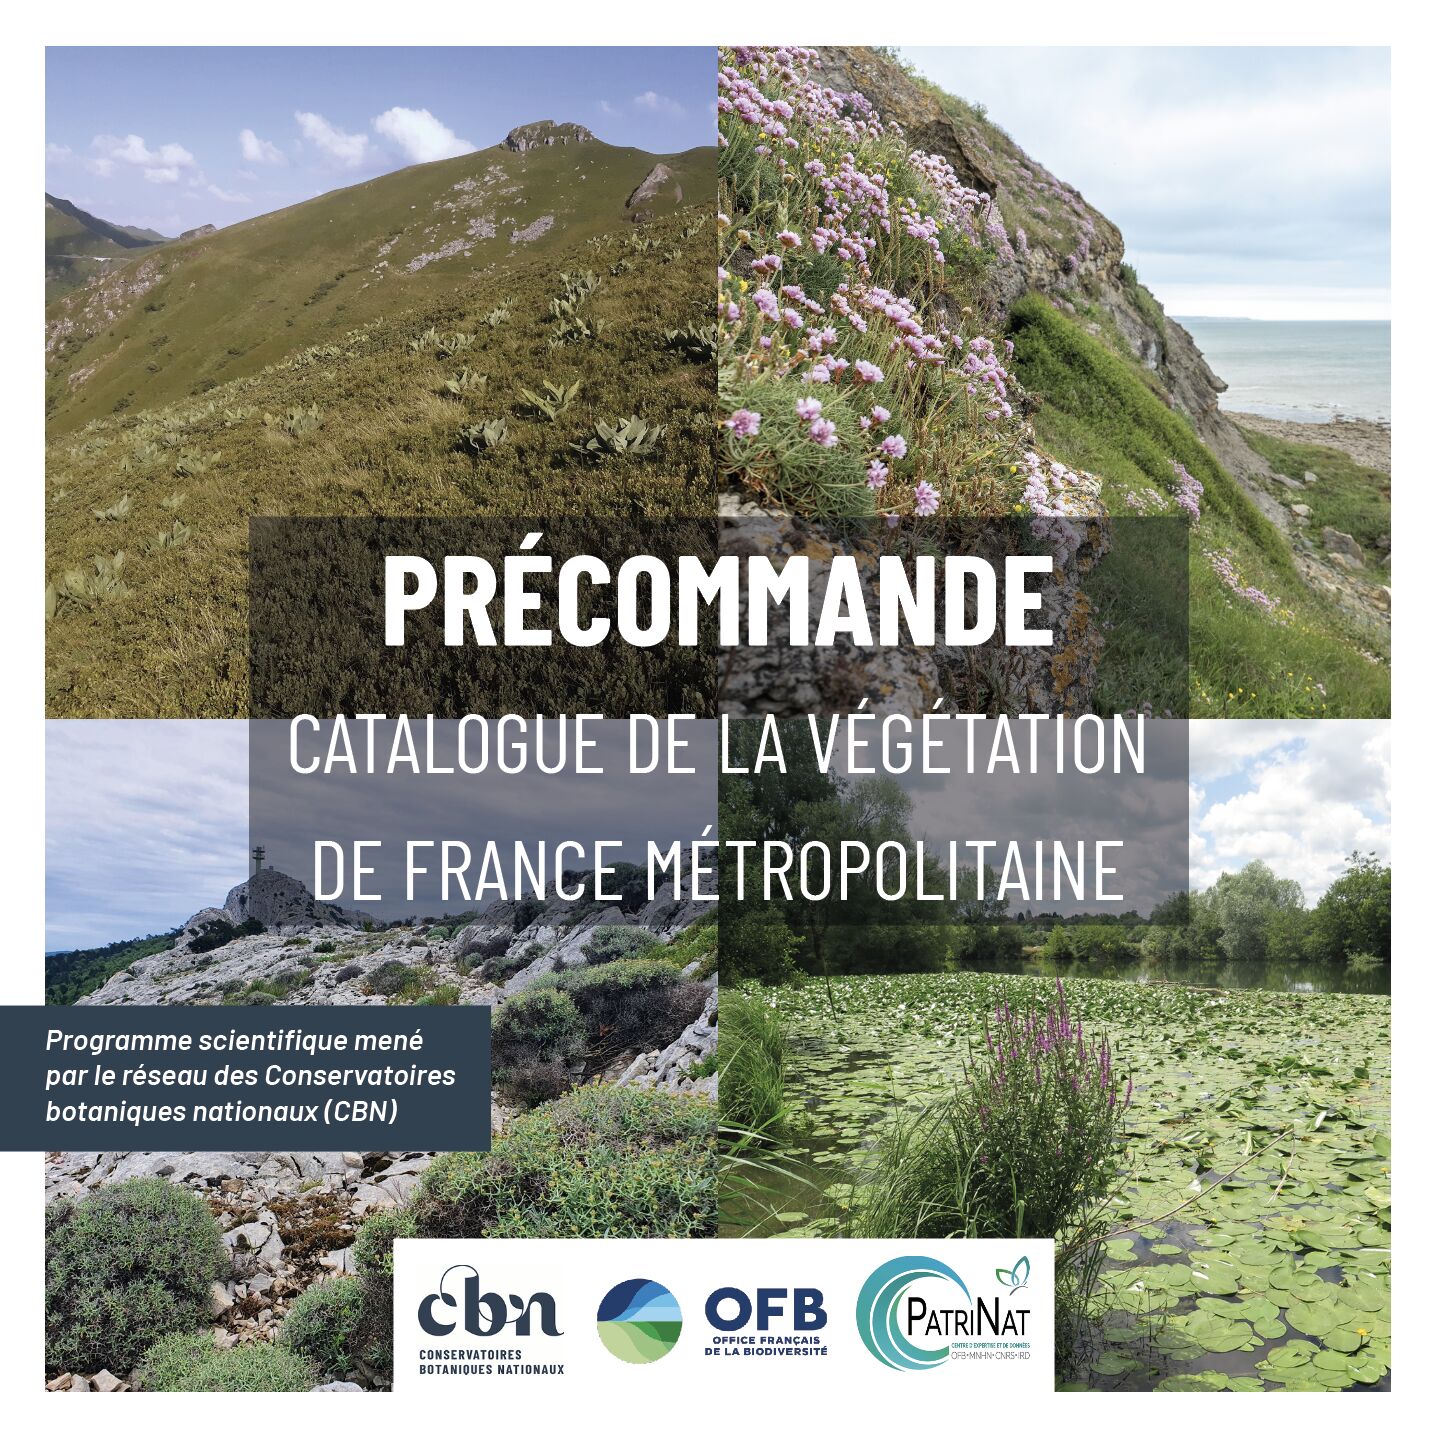 Le catalogue de la végétation de France métropolitaine est disponible en précommande.